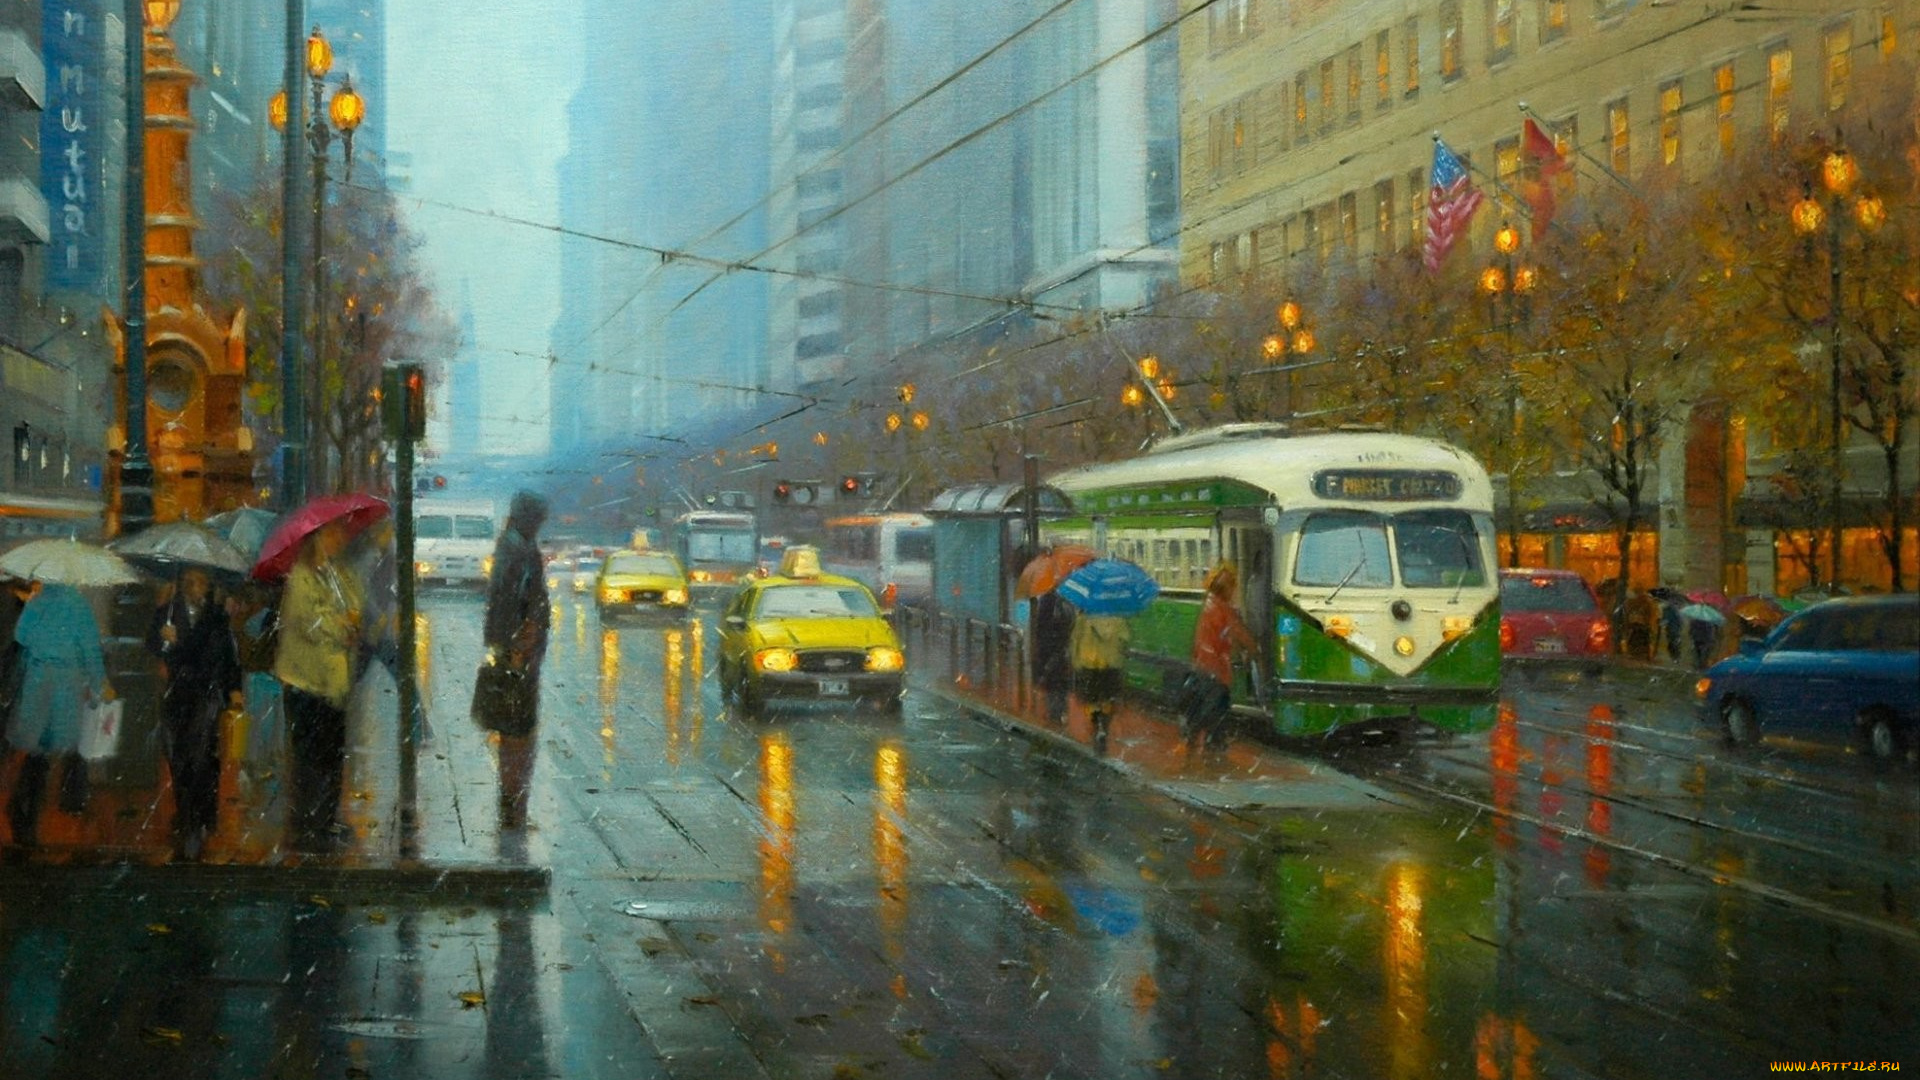 рисованное, живопись, арт, улица, город, дождь, трамвай, люди, зонтики, такси, огни, фонари, светофор